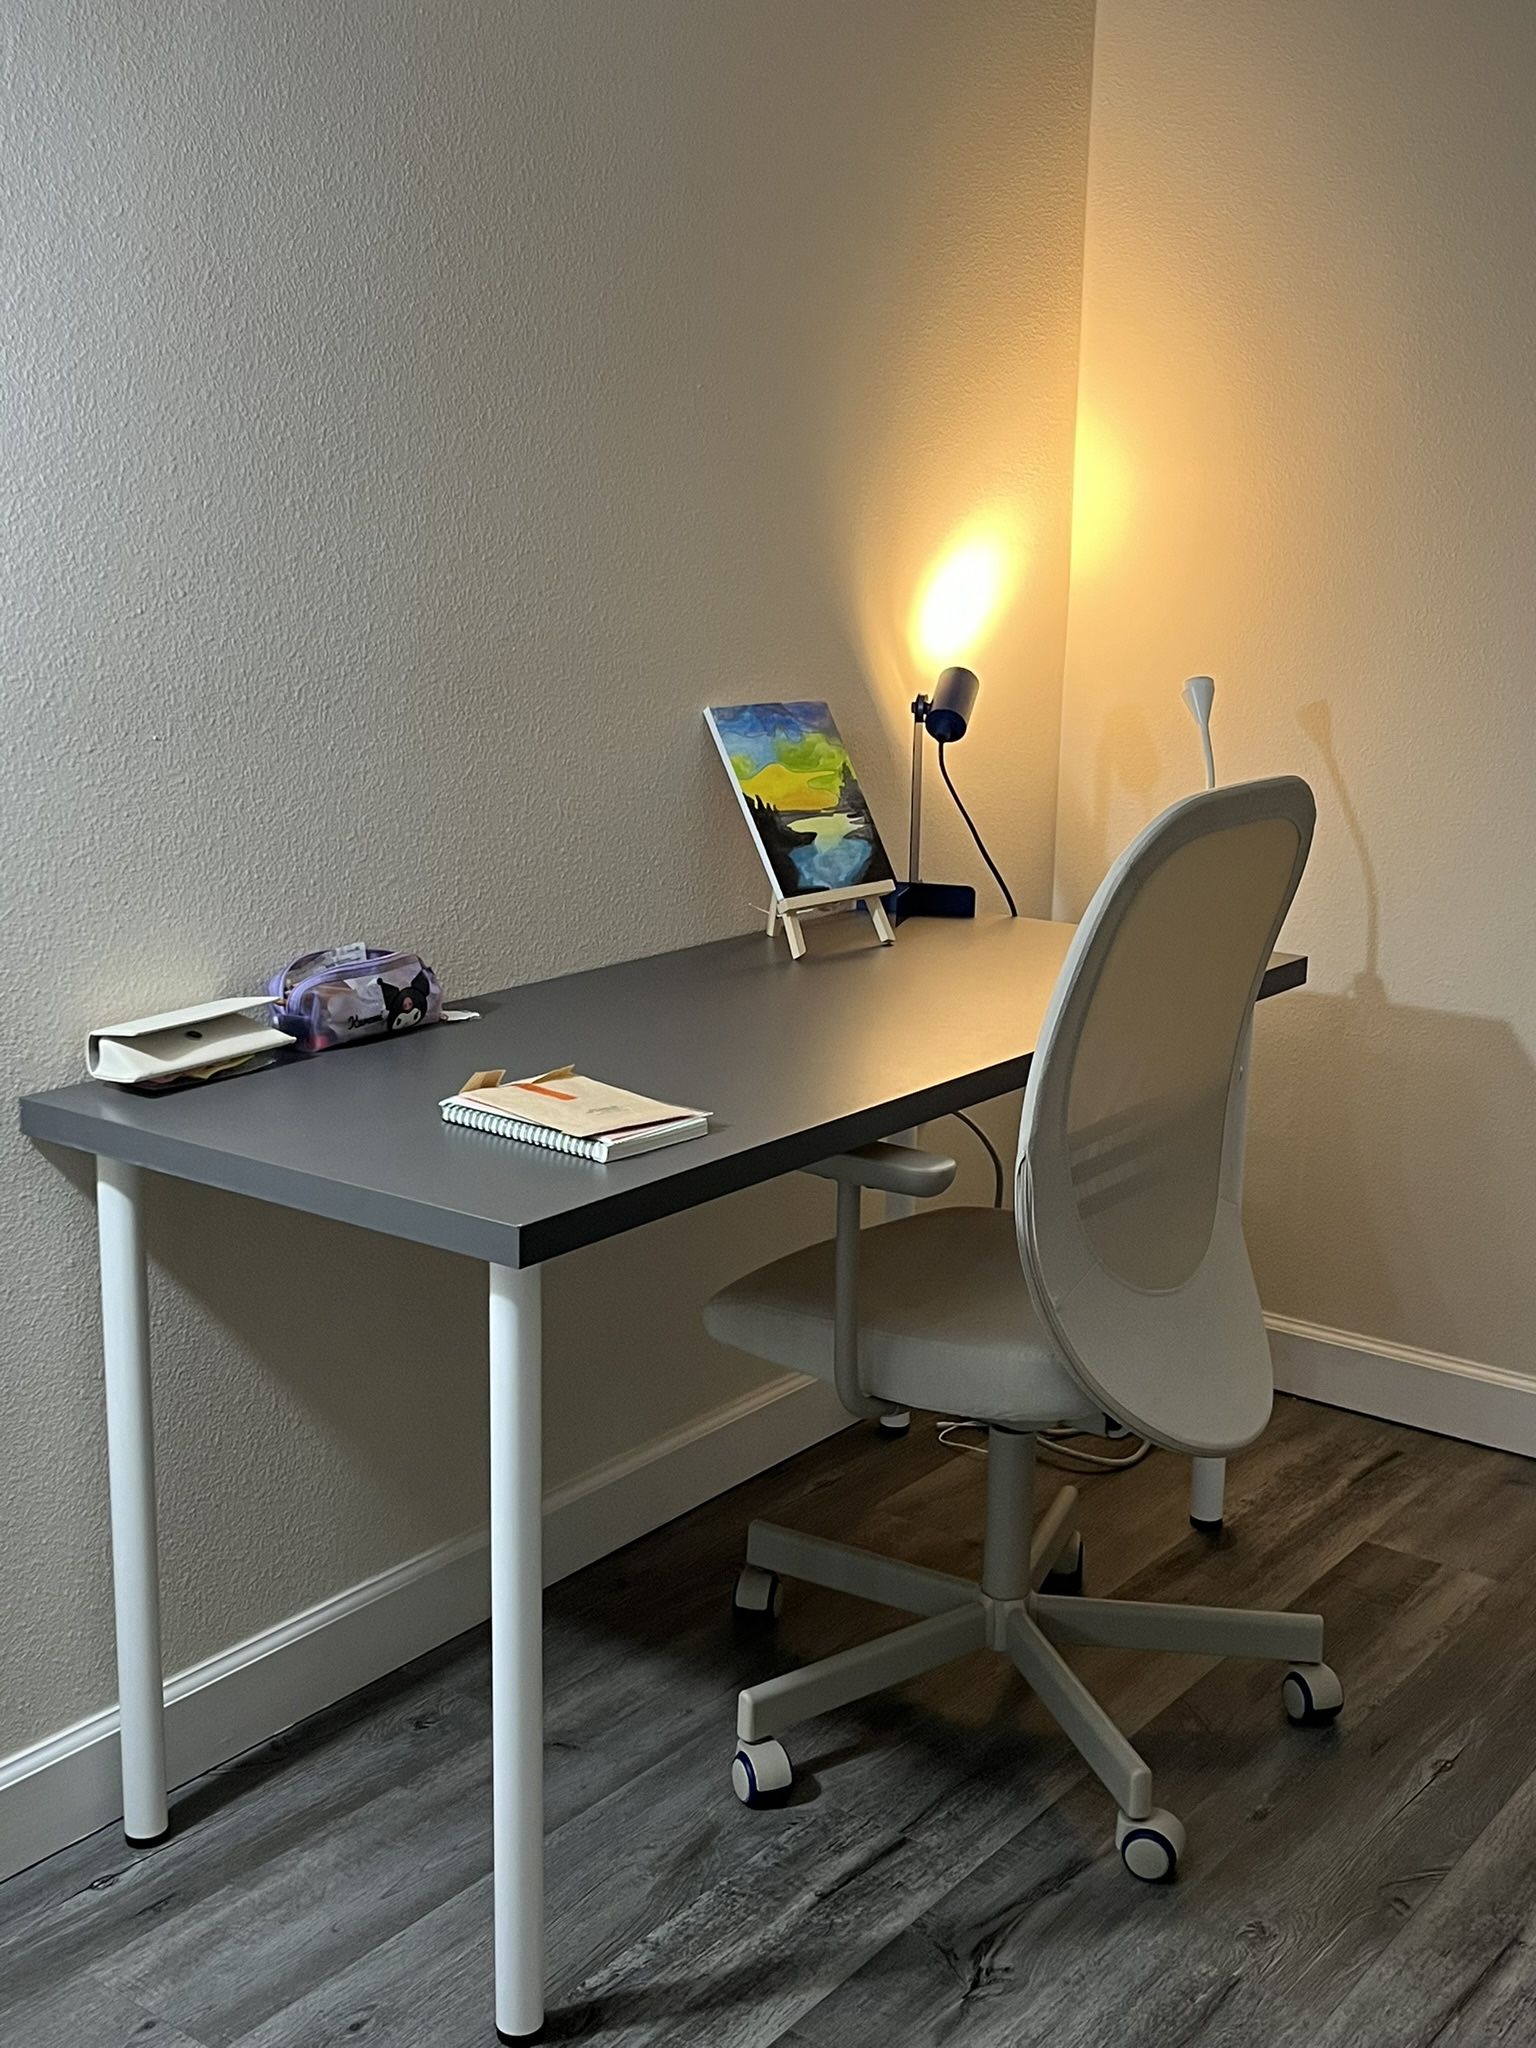 Desk Chair with Armrests (Beige Color)